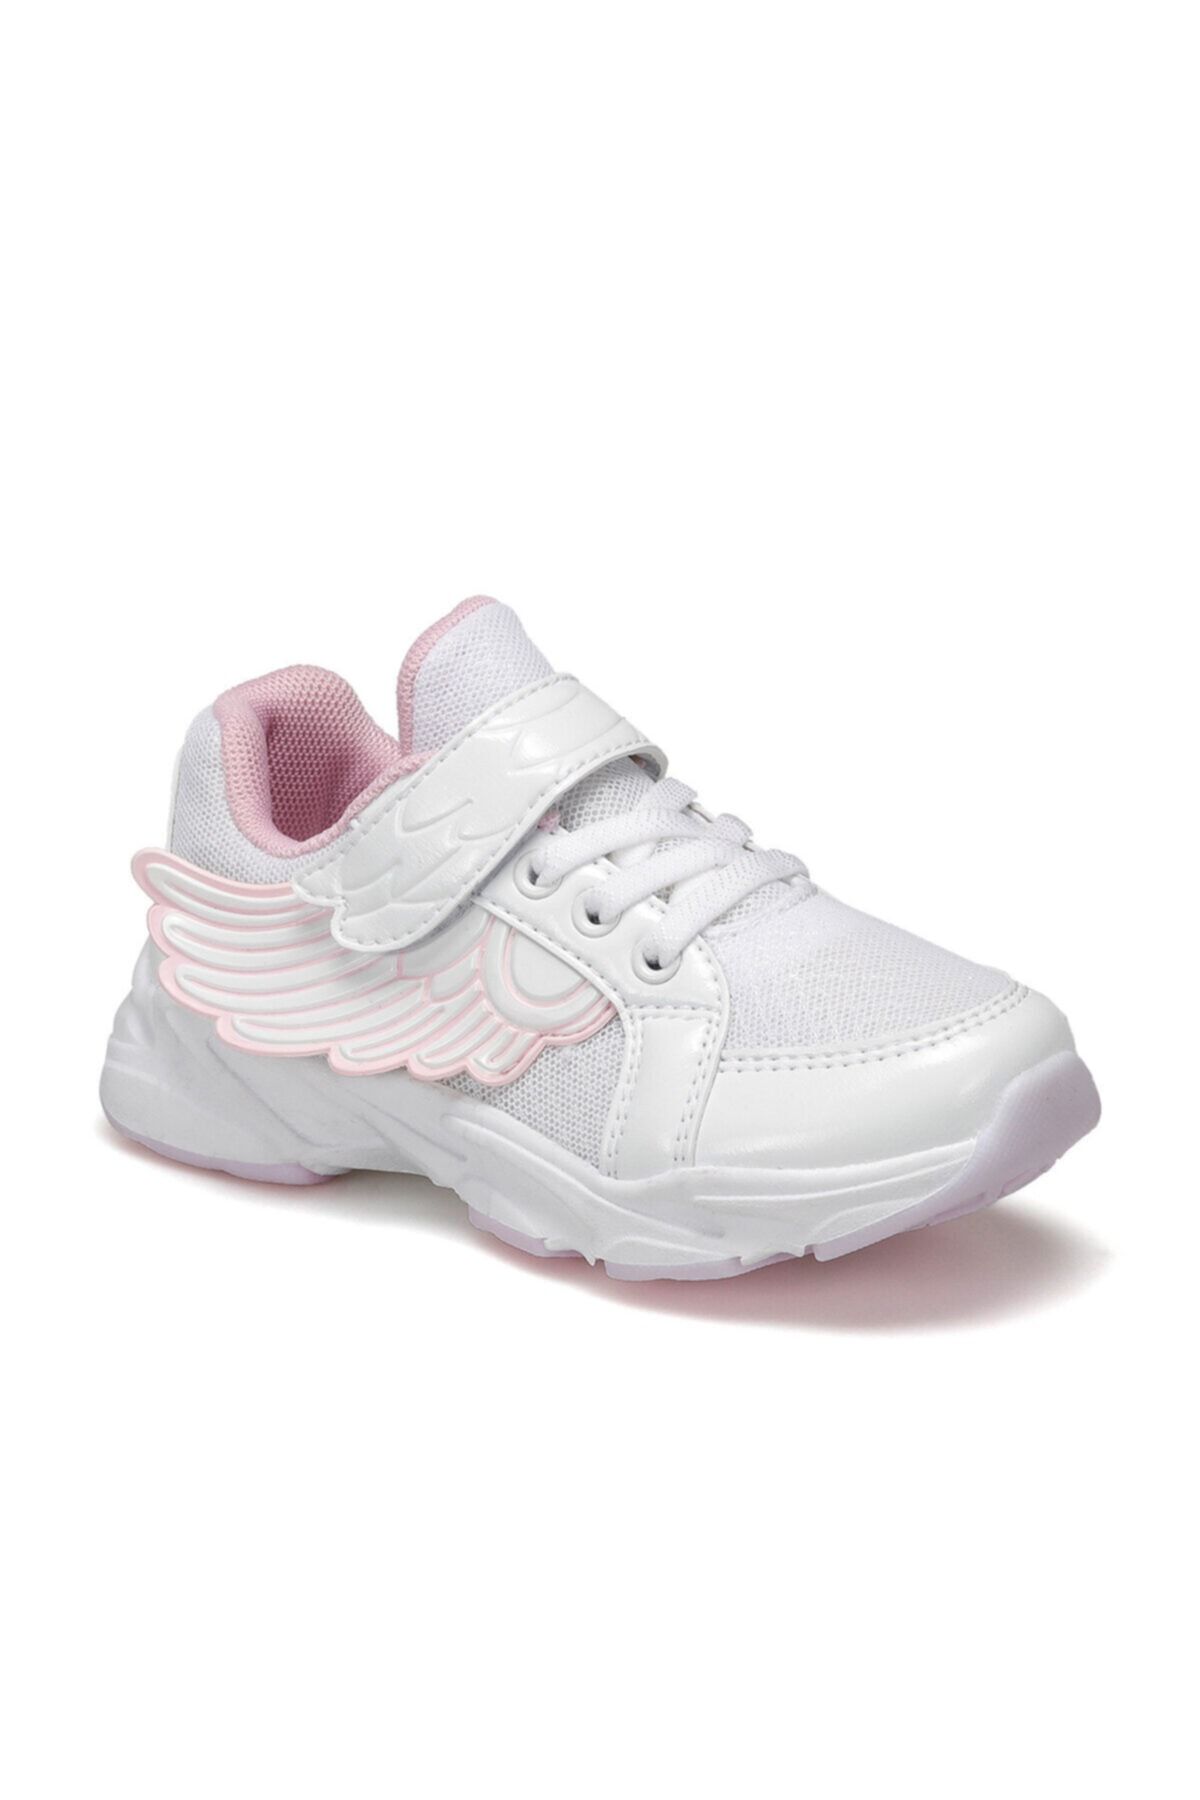 Winx Beyaz Kız Çocuk Spor Ayakkabı 100512179